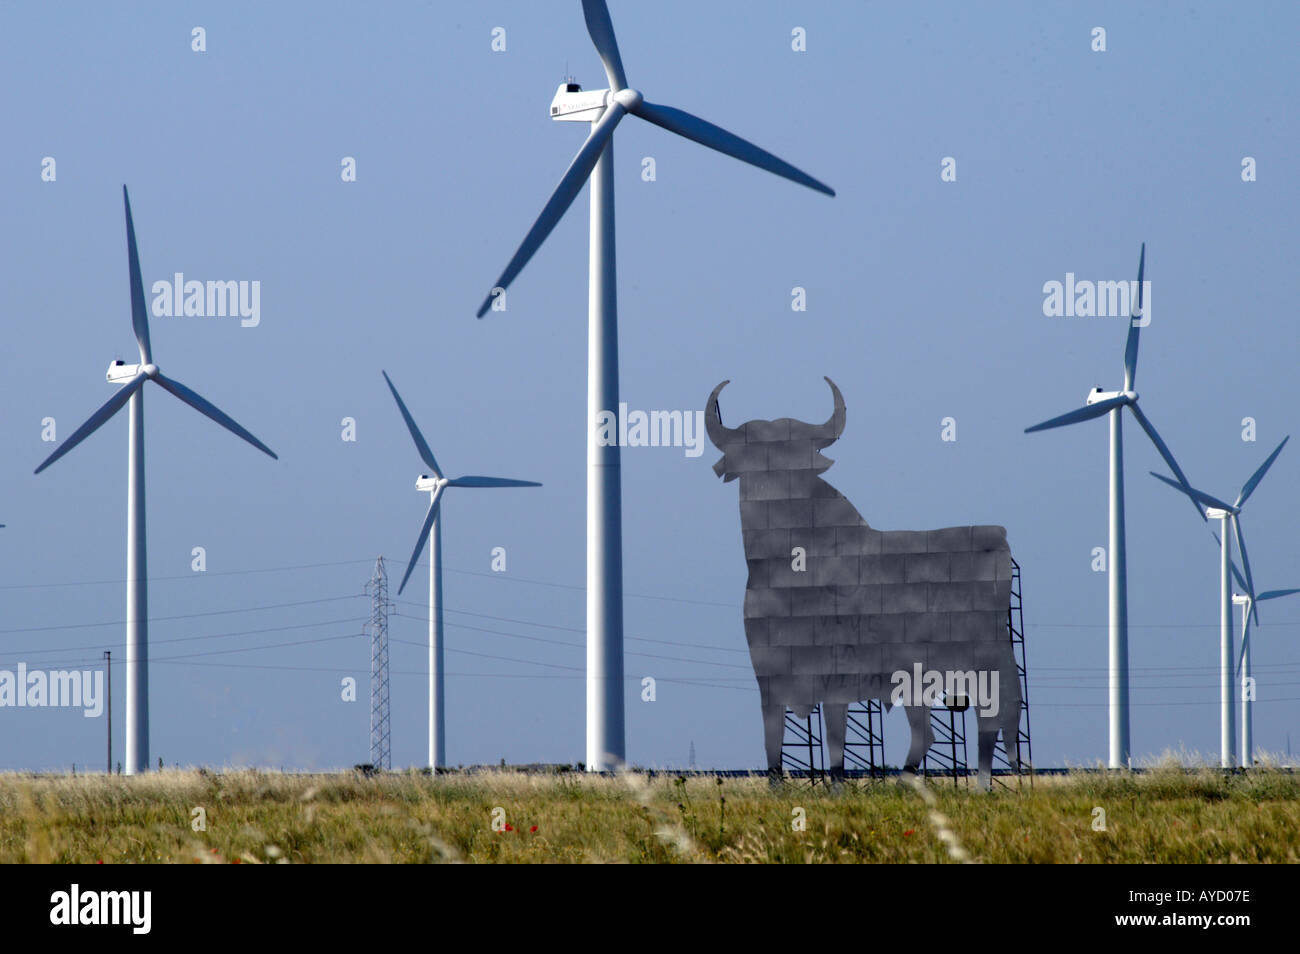 In Spagna, La Muela vicino a Zaragoza. Le turbine eoliche. Rialzista sul windpower. Osborne distintivo della Toro (bull) in background Foto Stock